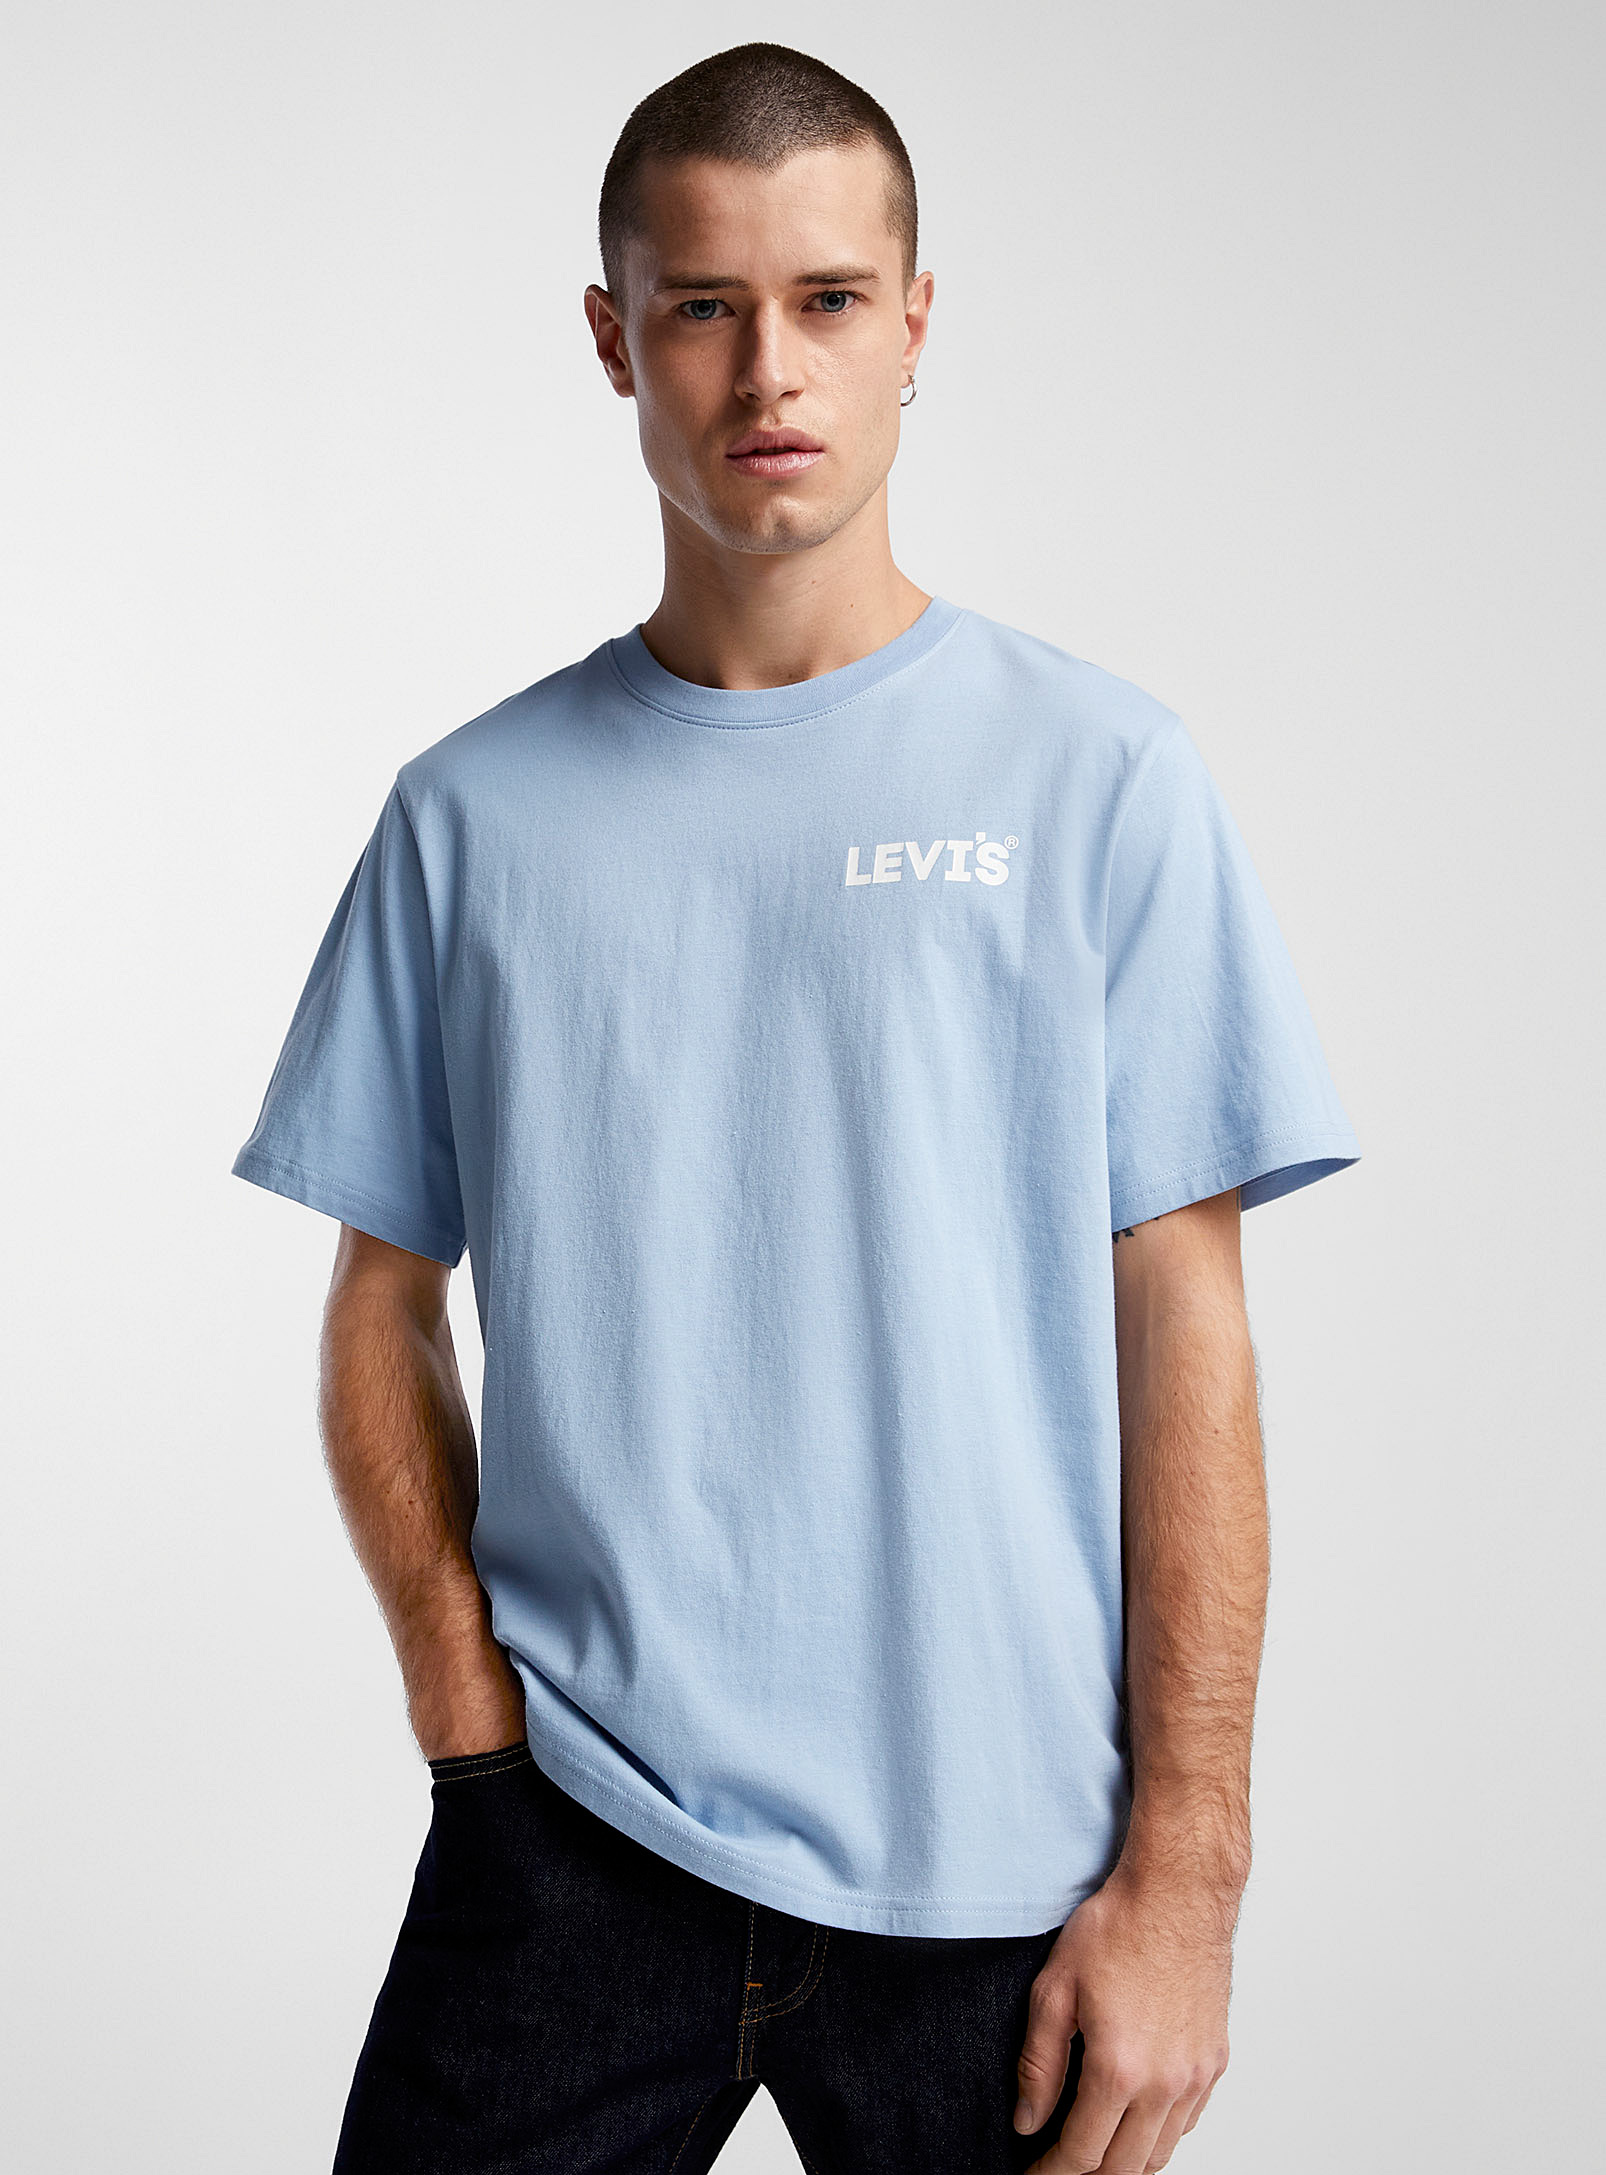 Levi's - Le t-shirt logo répété